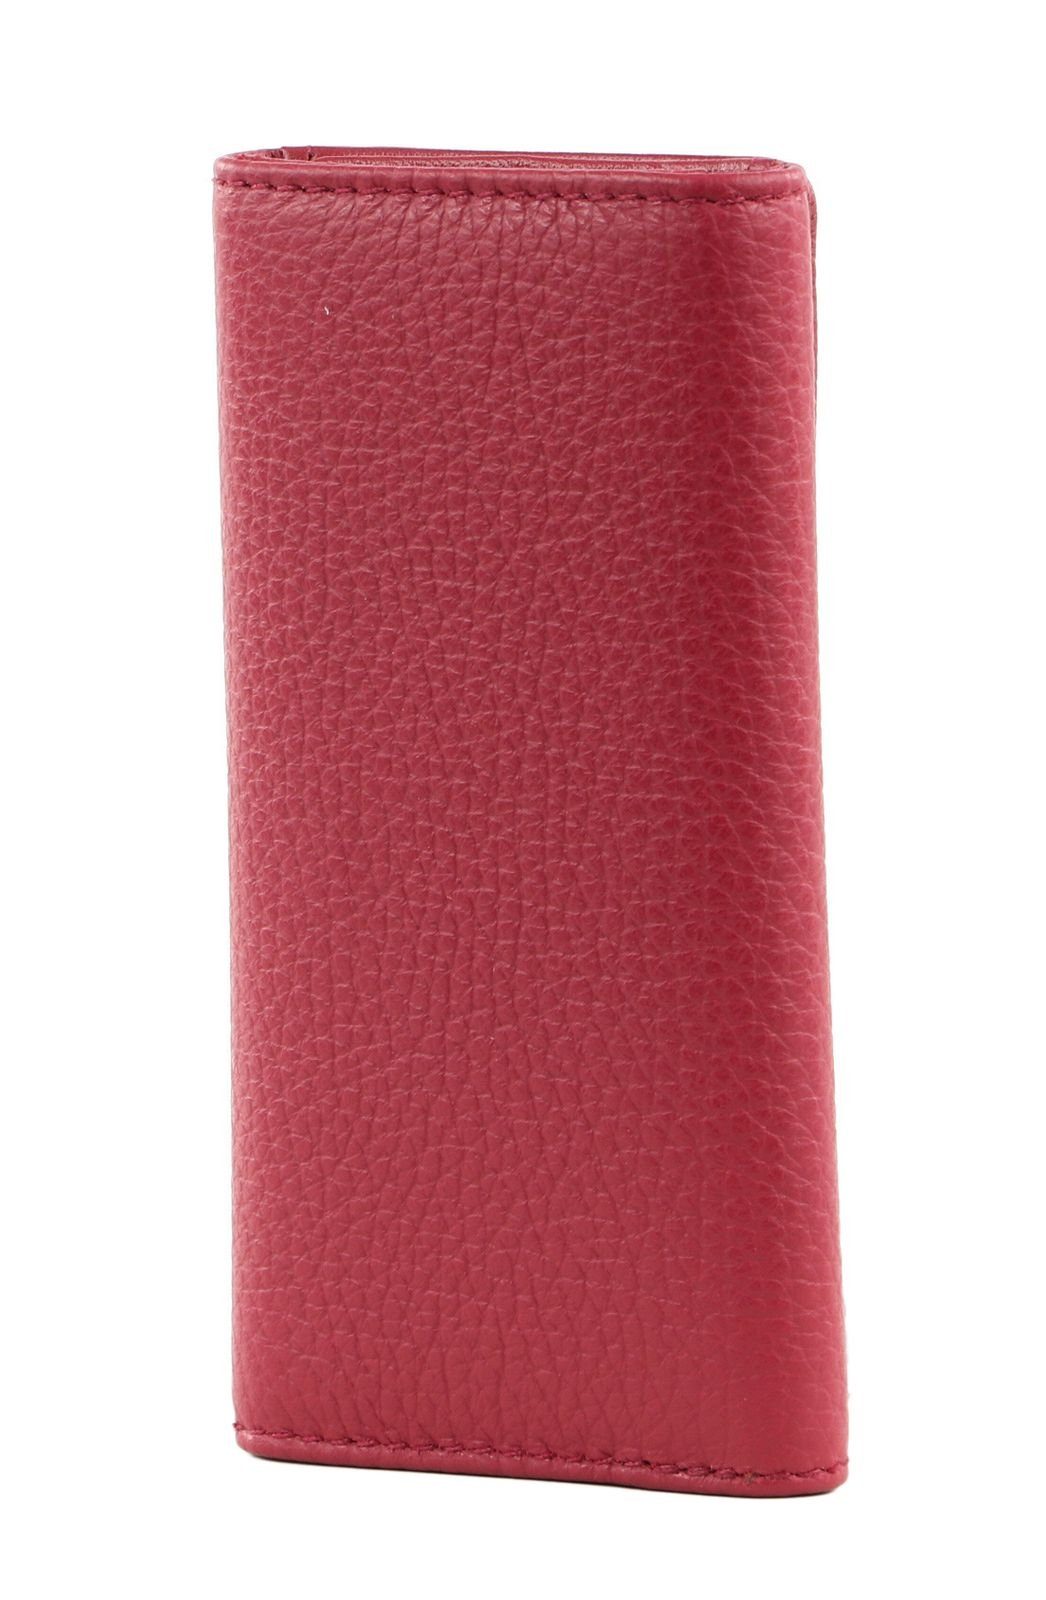 Rumba Mandarina Mellow Duck Leather Schlüsseltasche Red